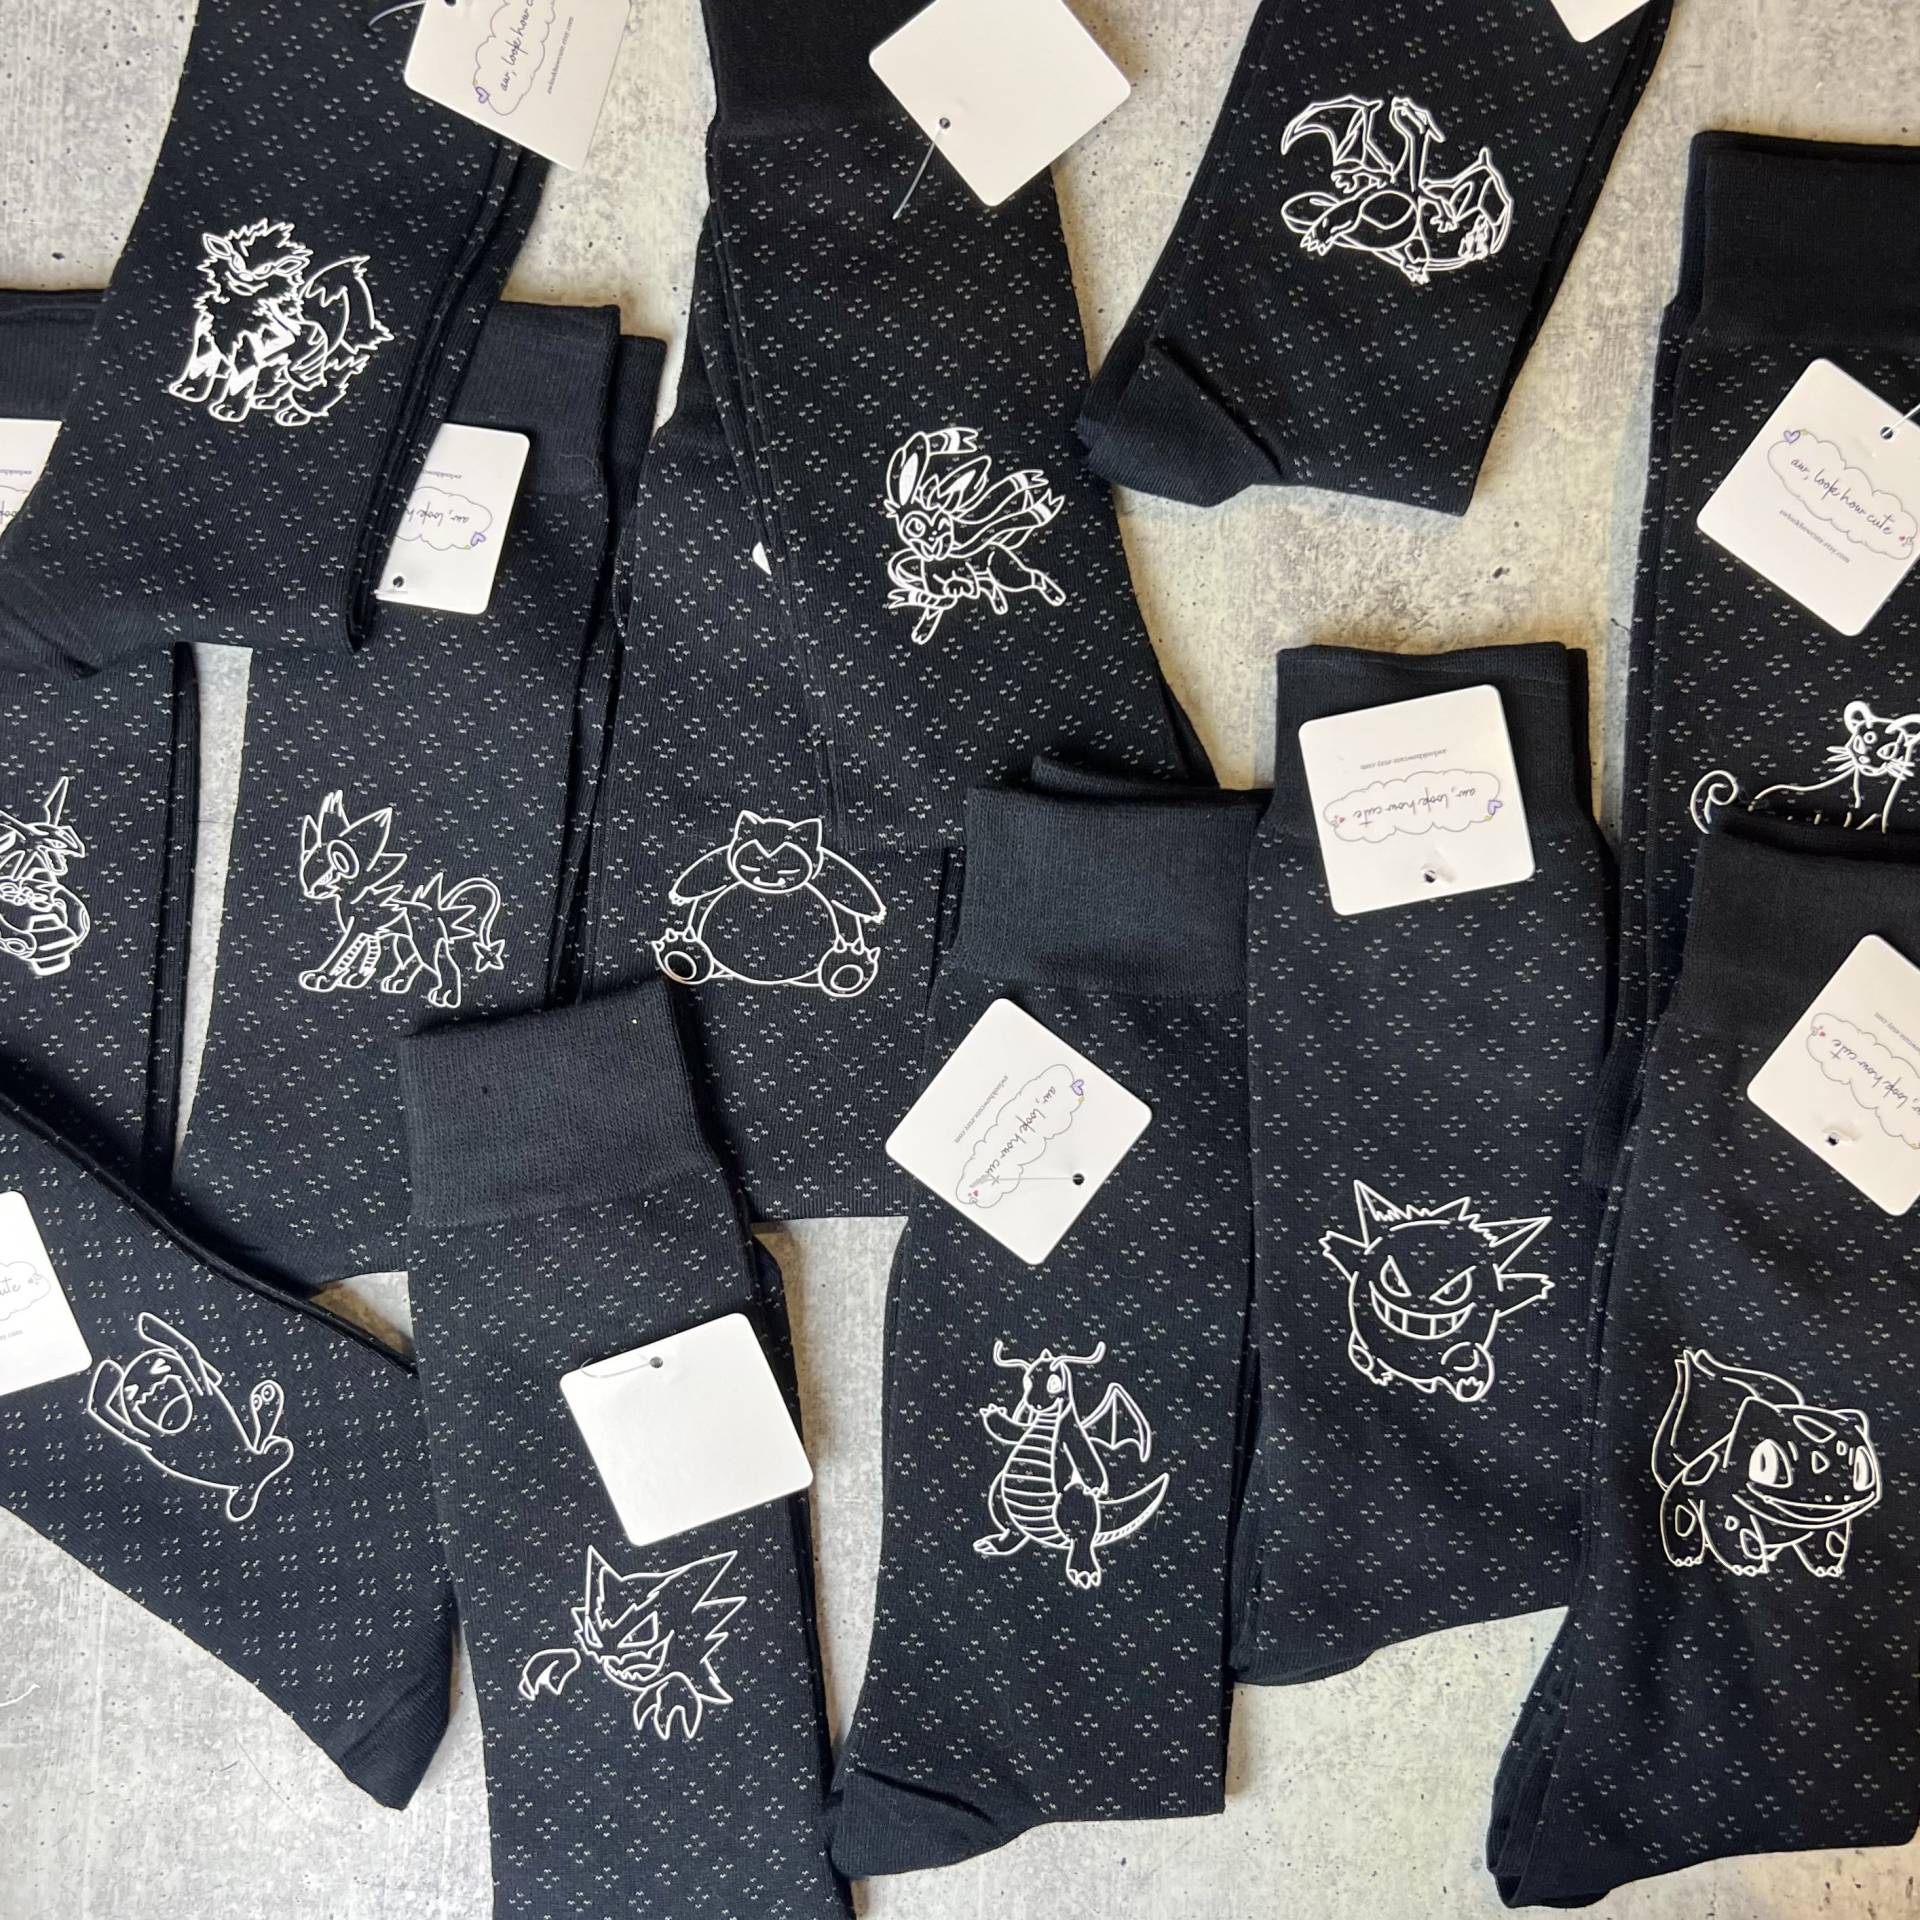 Personalisierte Trauzeugen-Socken, Benutzerdefinierte Groomsmen-Socken, Schwarzes-Kleidsocke, Personalisierte Herren-Kleidsocke, Schwarze von awlookhowcute